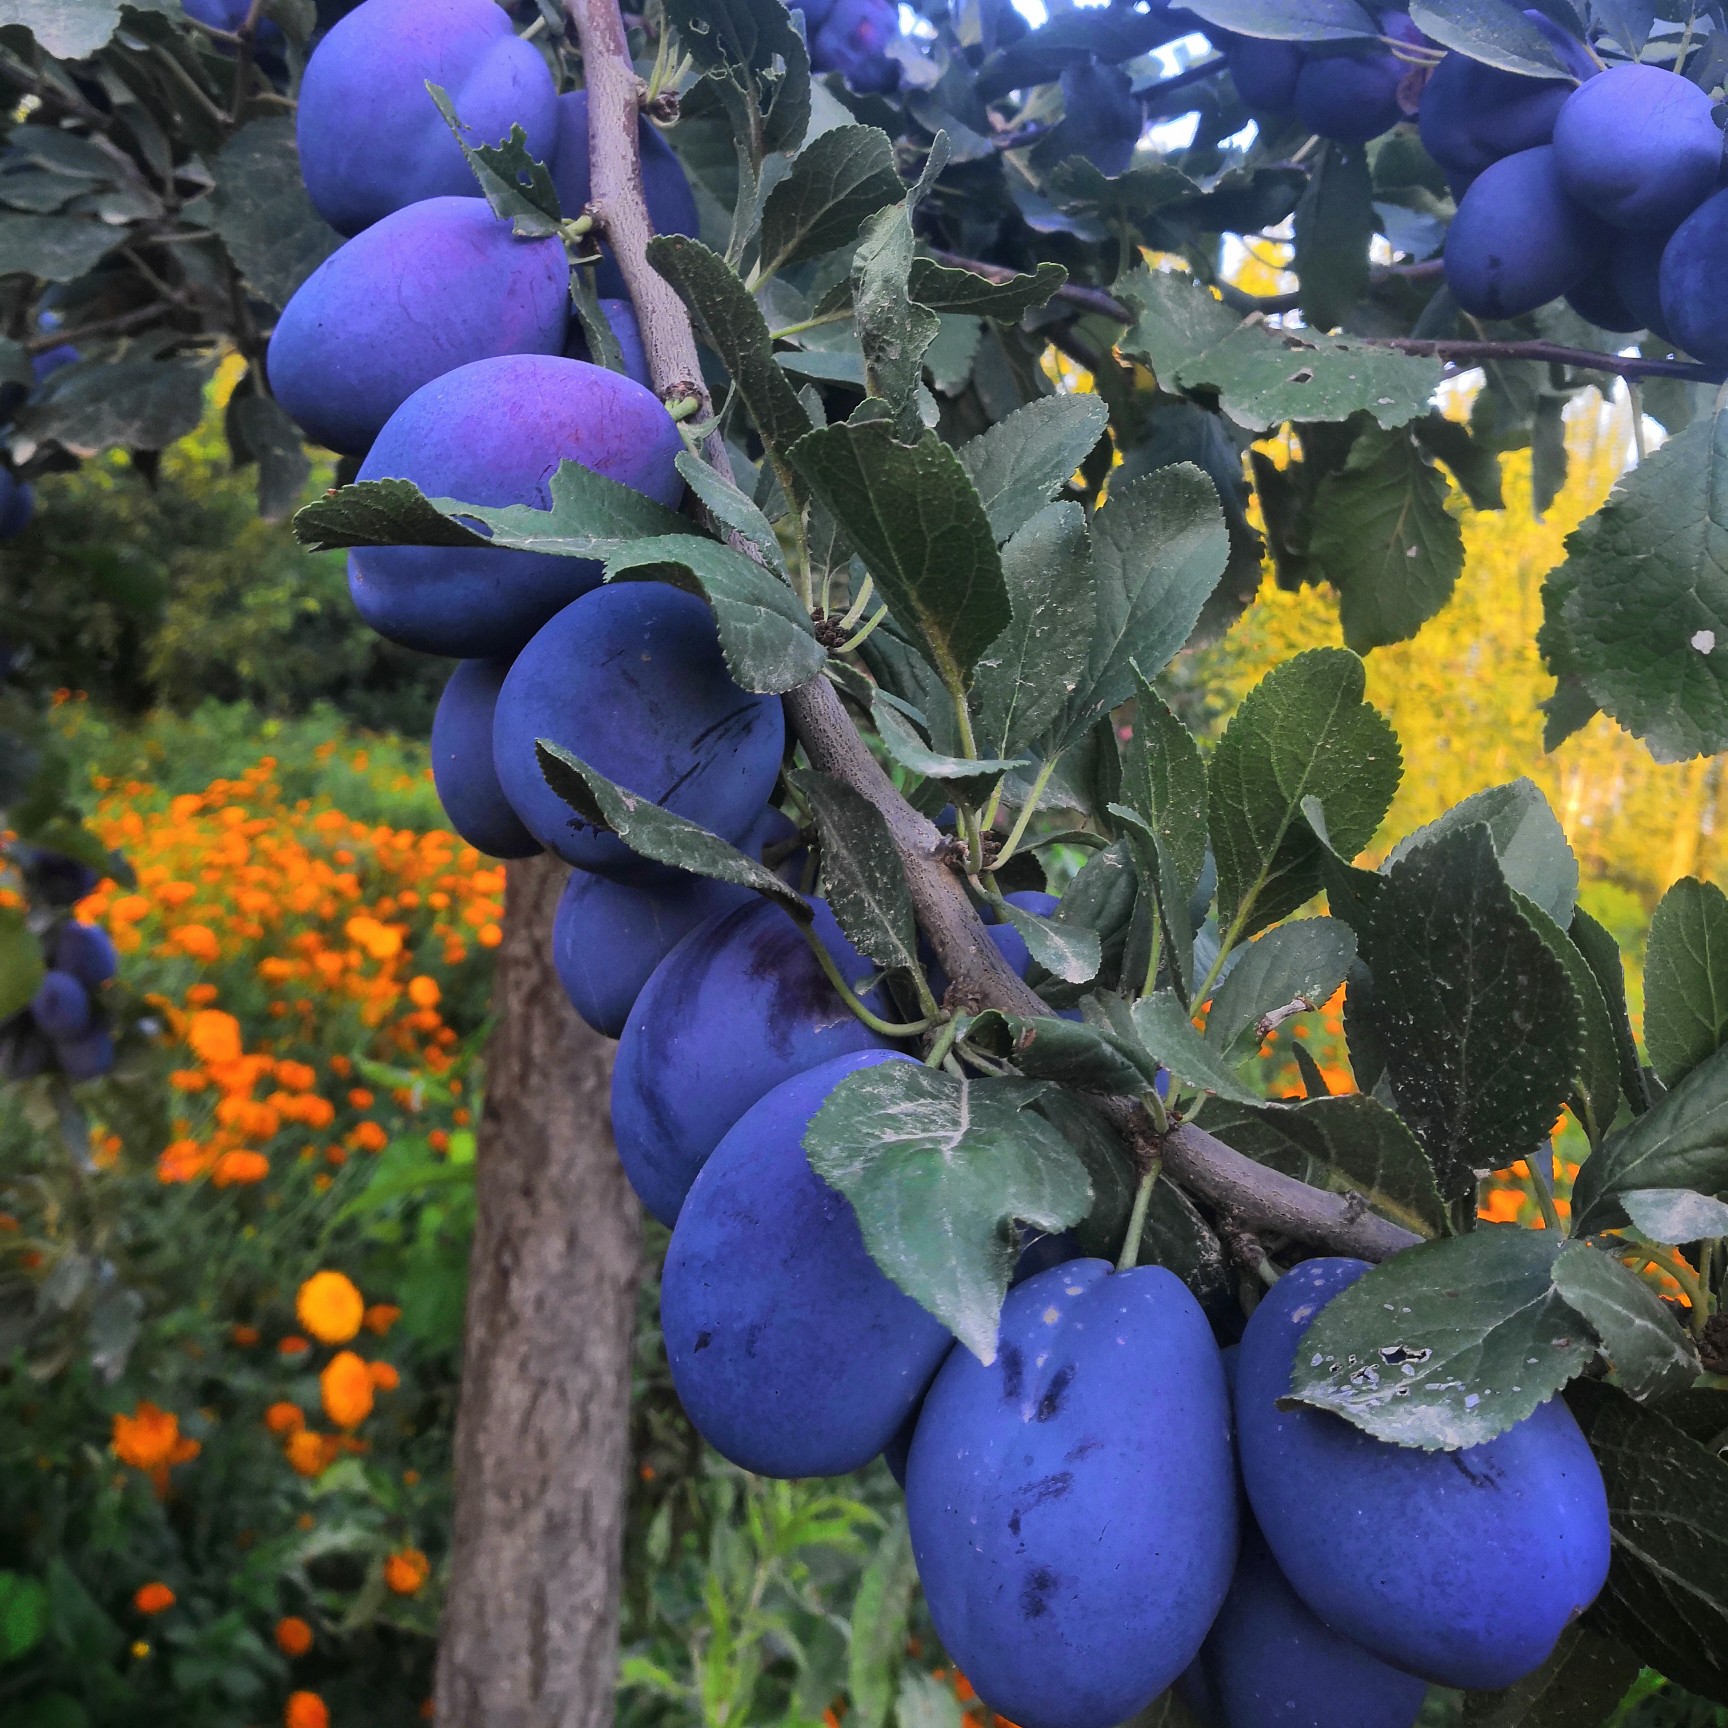 [蓝莓批发]蓝莓 新疆维吾尔自治区喀什地区莎车县 价格5元/斤 